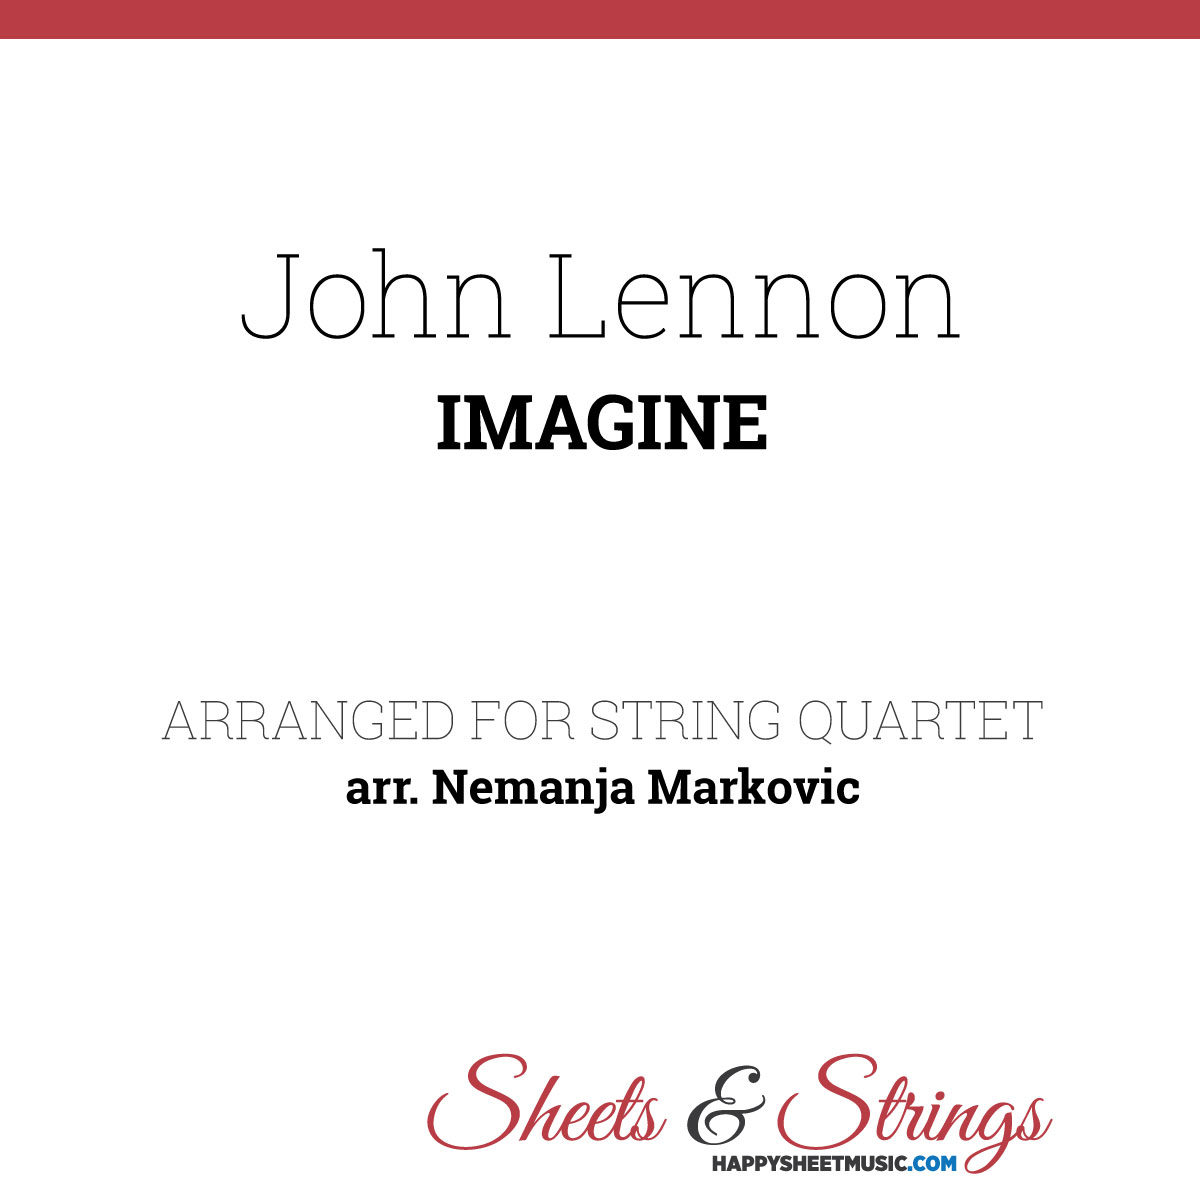 John Lennon - Imagine - Sheet Music for String Quartet - Music Arrangement for String Quartet